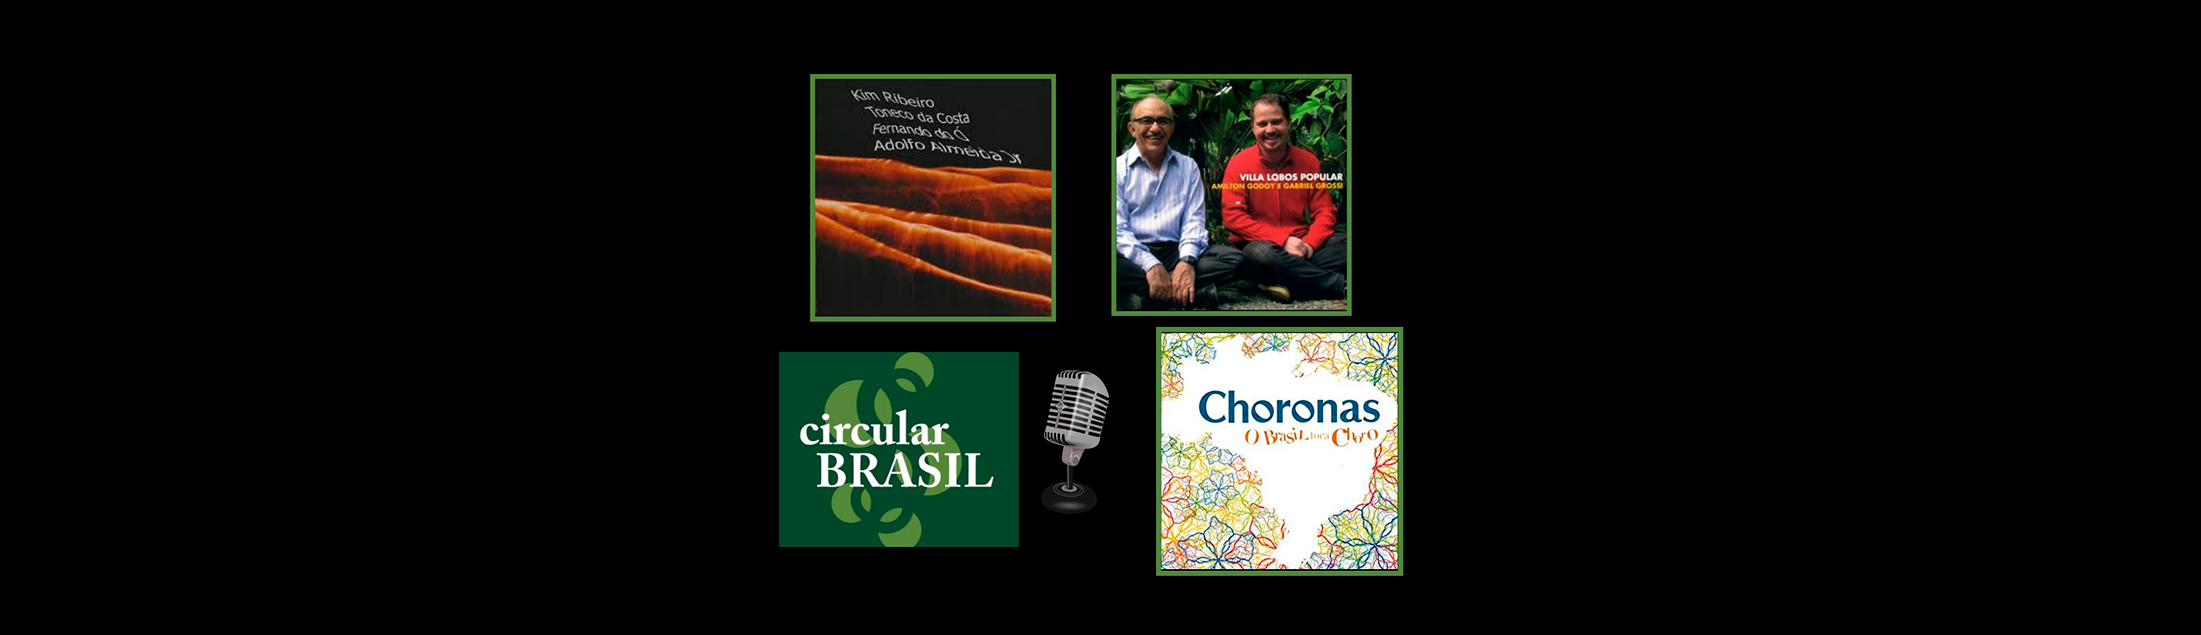 Projetos 'Fora da curva' no Circular Brasil